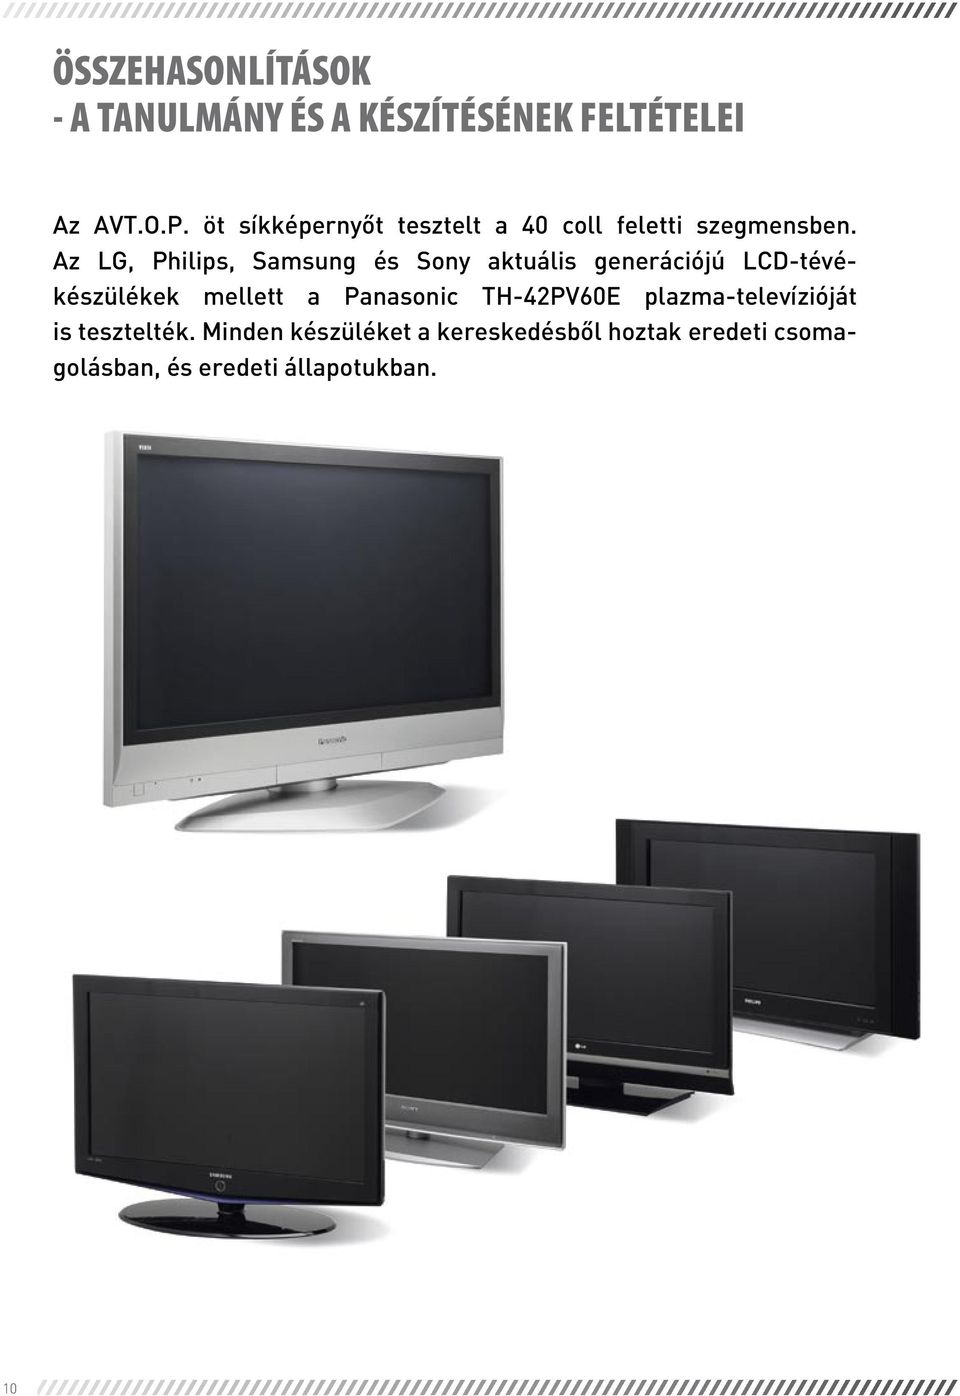 Az LG, Philips, Samsung és Sony aktuális generációjú LCD-tévékészülékek mellett a